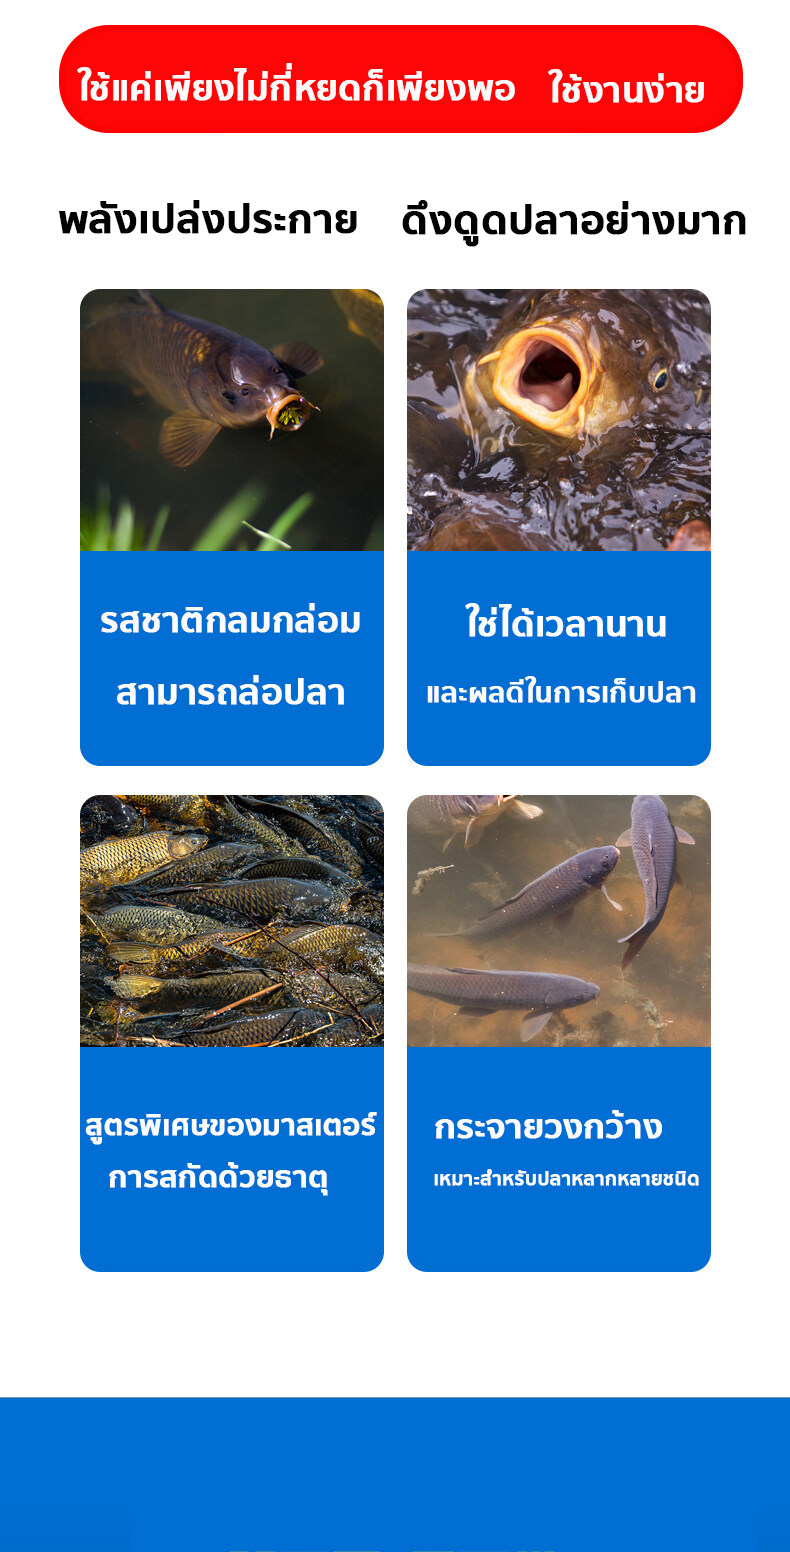 ภาพอธิบายเพิ่มเติมของ DMPT หัวเชื้อตกปลา หัวเชื้อปลานิล สามารถดึงดูดปลาได้หลายชนิด ใช้ได้กับเหยื่อทุกชนิด เหยื่อปลานิล หัวเชื้อตกปลาสวาย ฟีโรโมนตกปลา ผงกระตุ้นปลา ผงล่อปลา ผงดึงดูดปลา สารเร่งปลากิน หัวเชื้อผง หัวเชื้อผงตกปลา ตัวเร่งปลาเข้าไว หัวเชื้อล่อปลา หัวเชื่อตกปลา